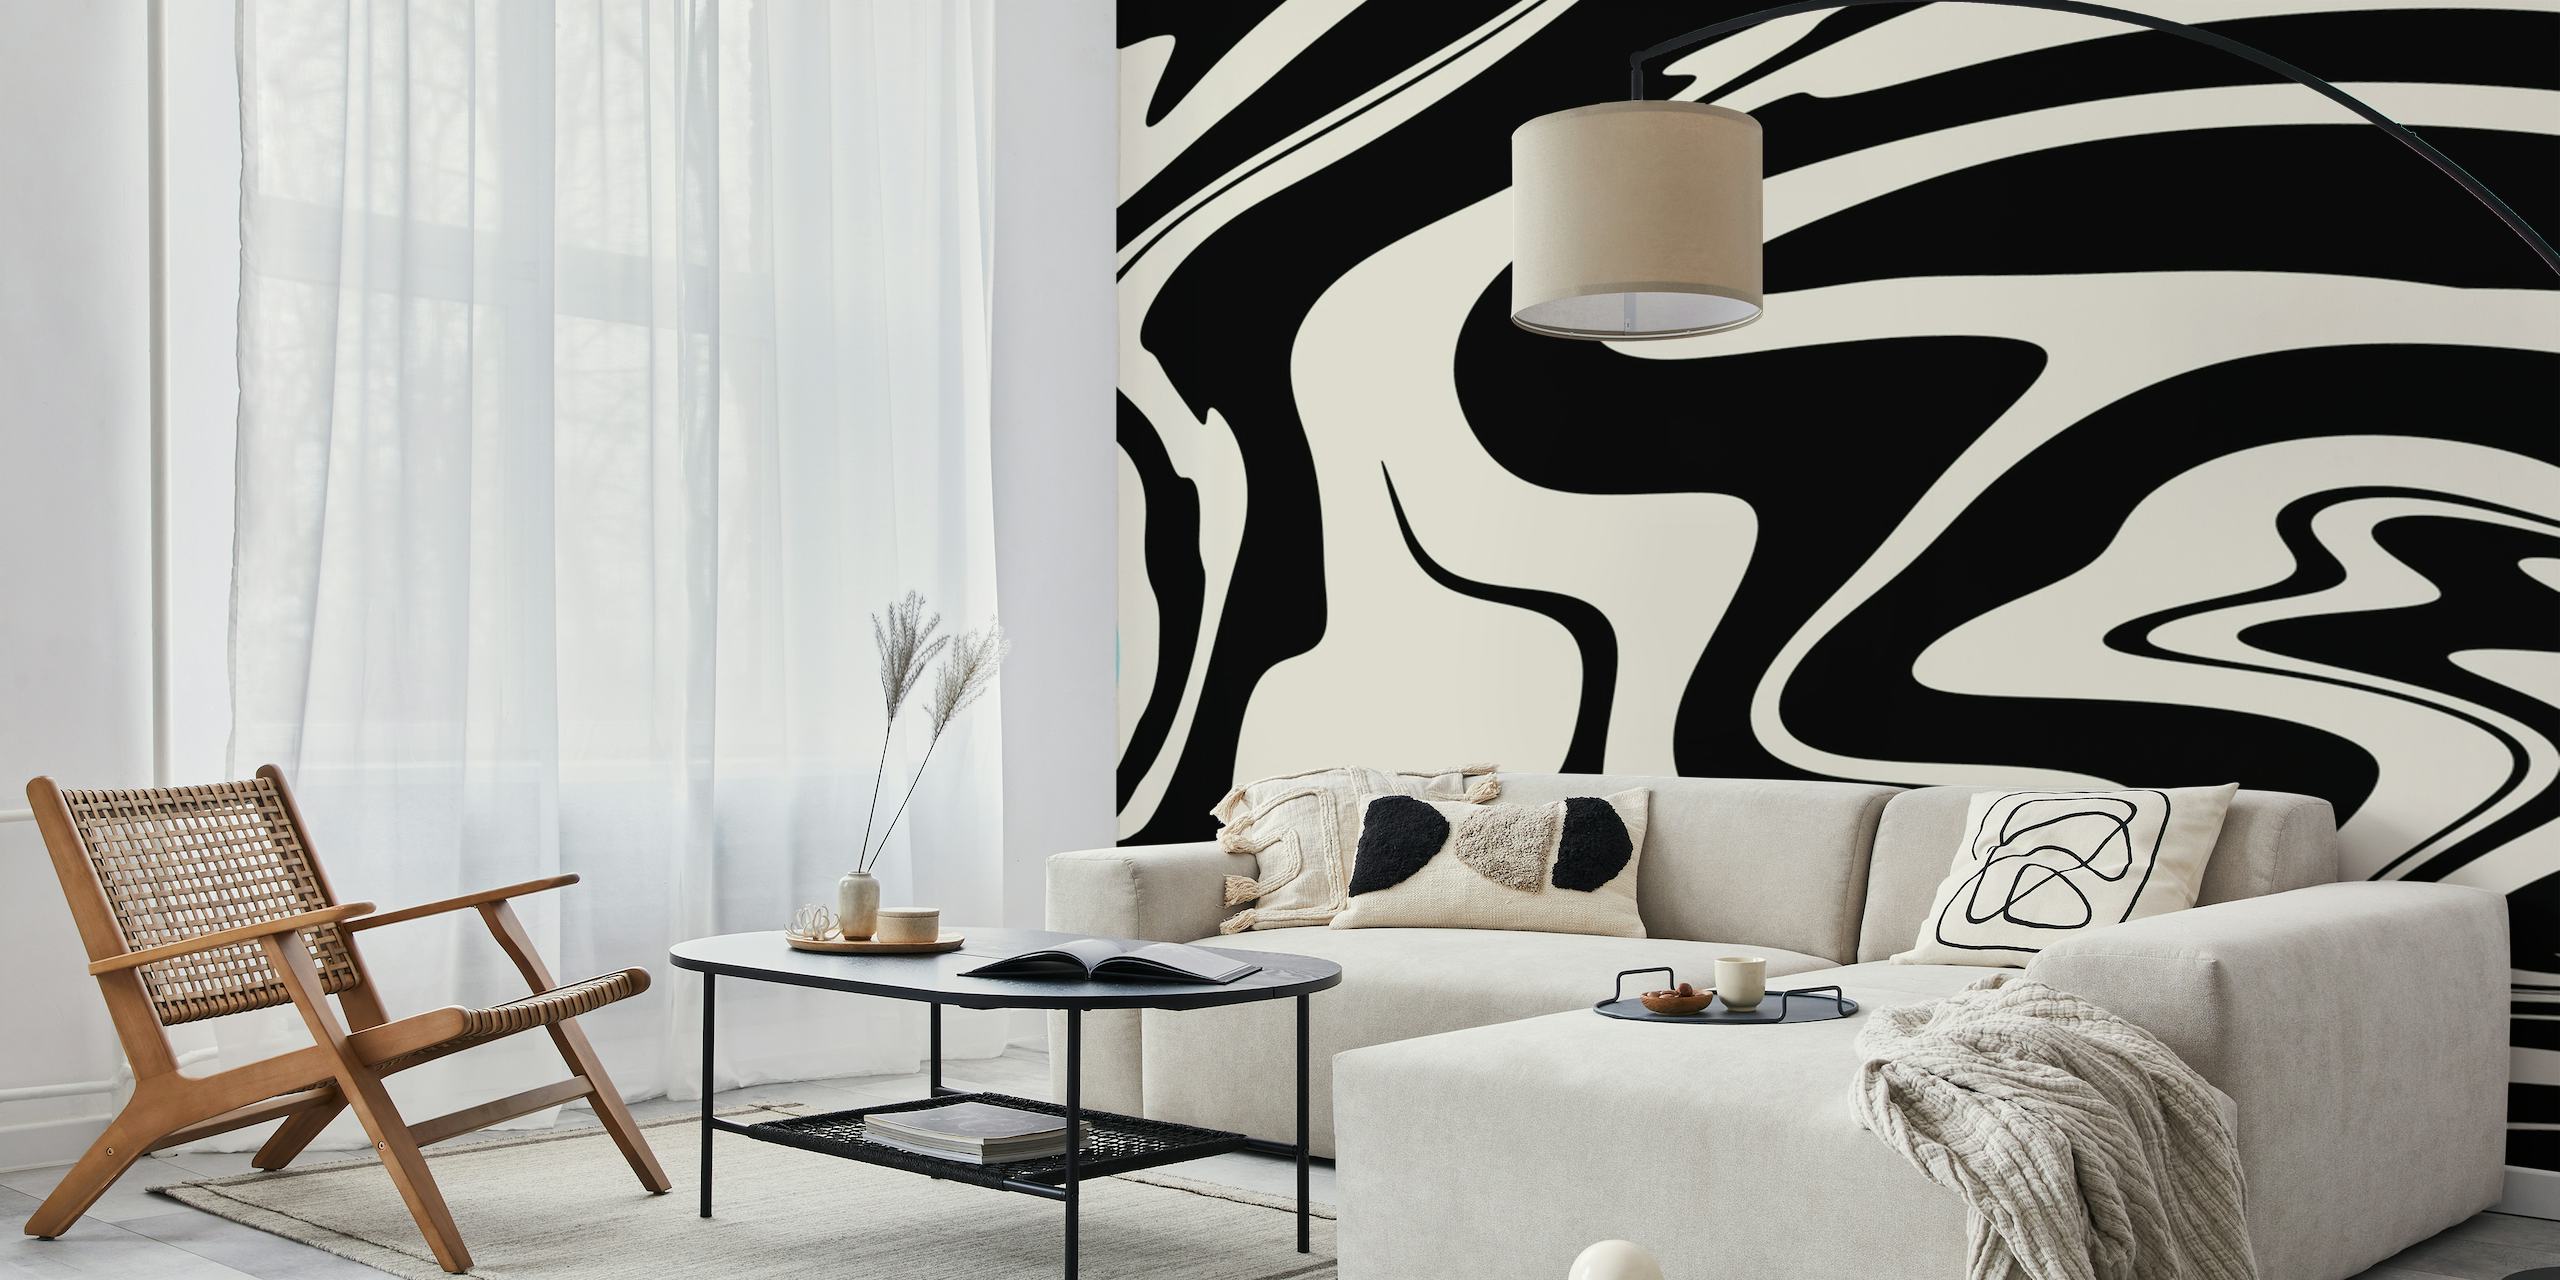 Zwart-wit abstract wervelend ontwerp dat doet denken aan retro glamourstijl voor fotobehang.